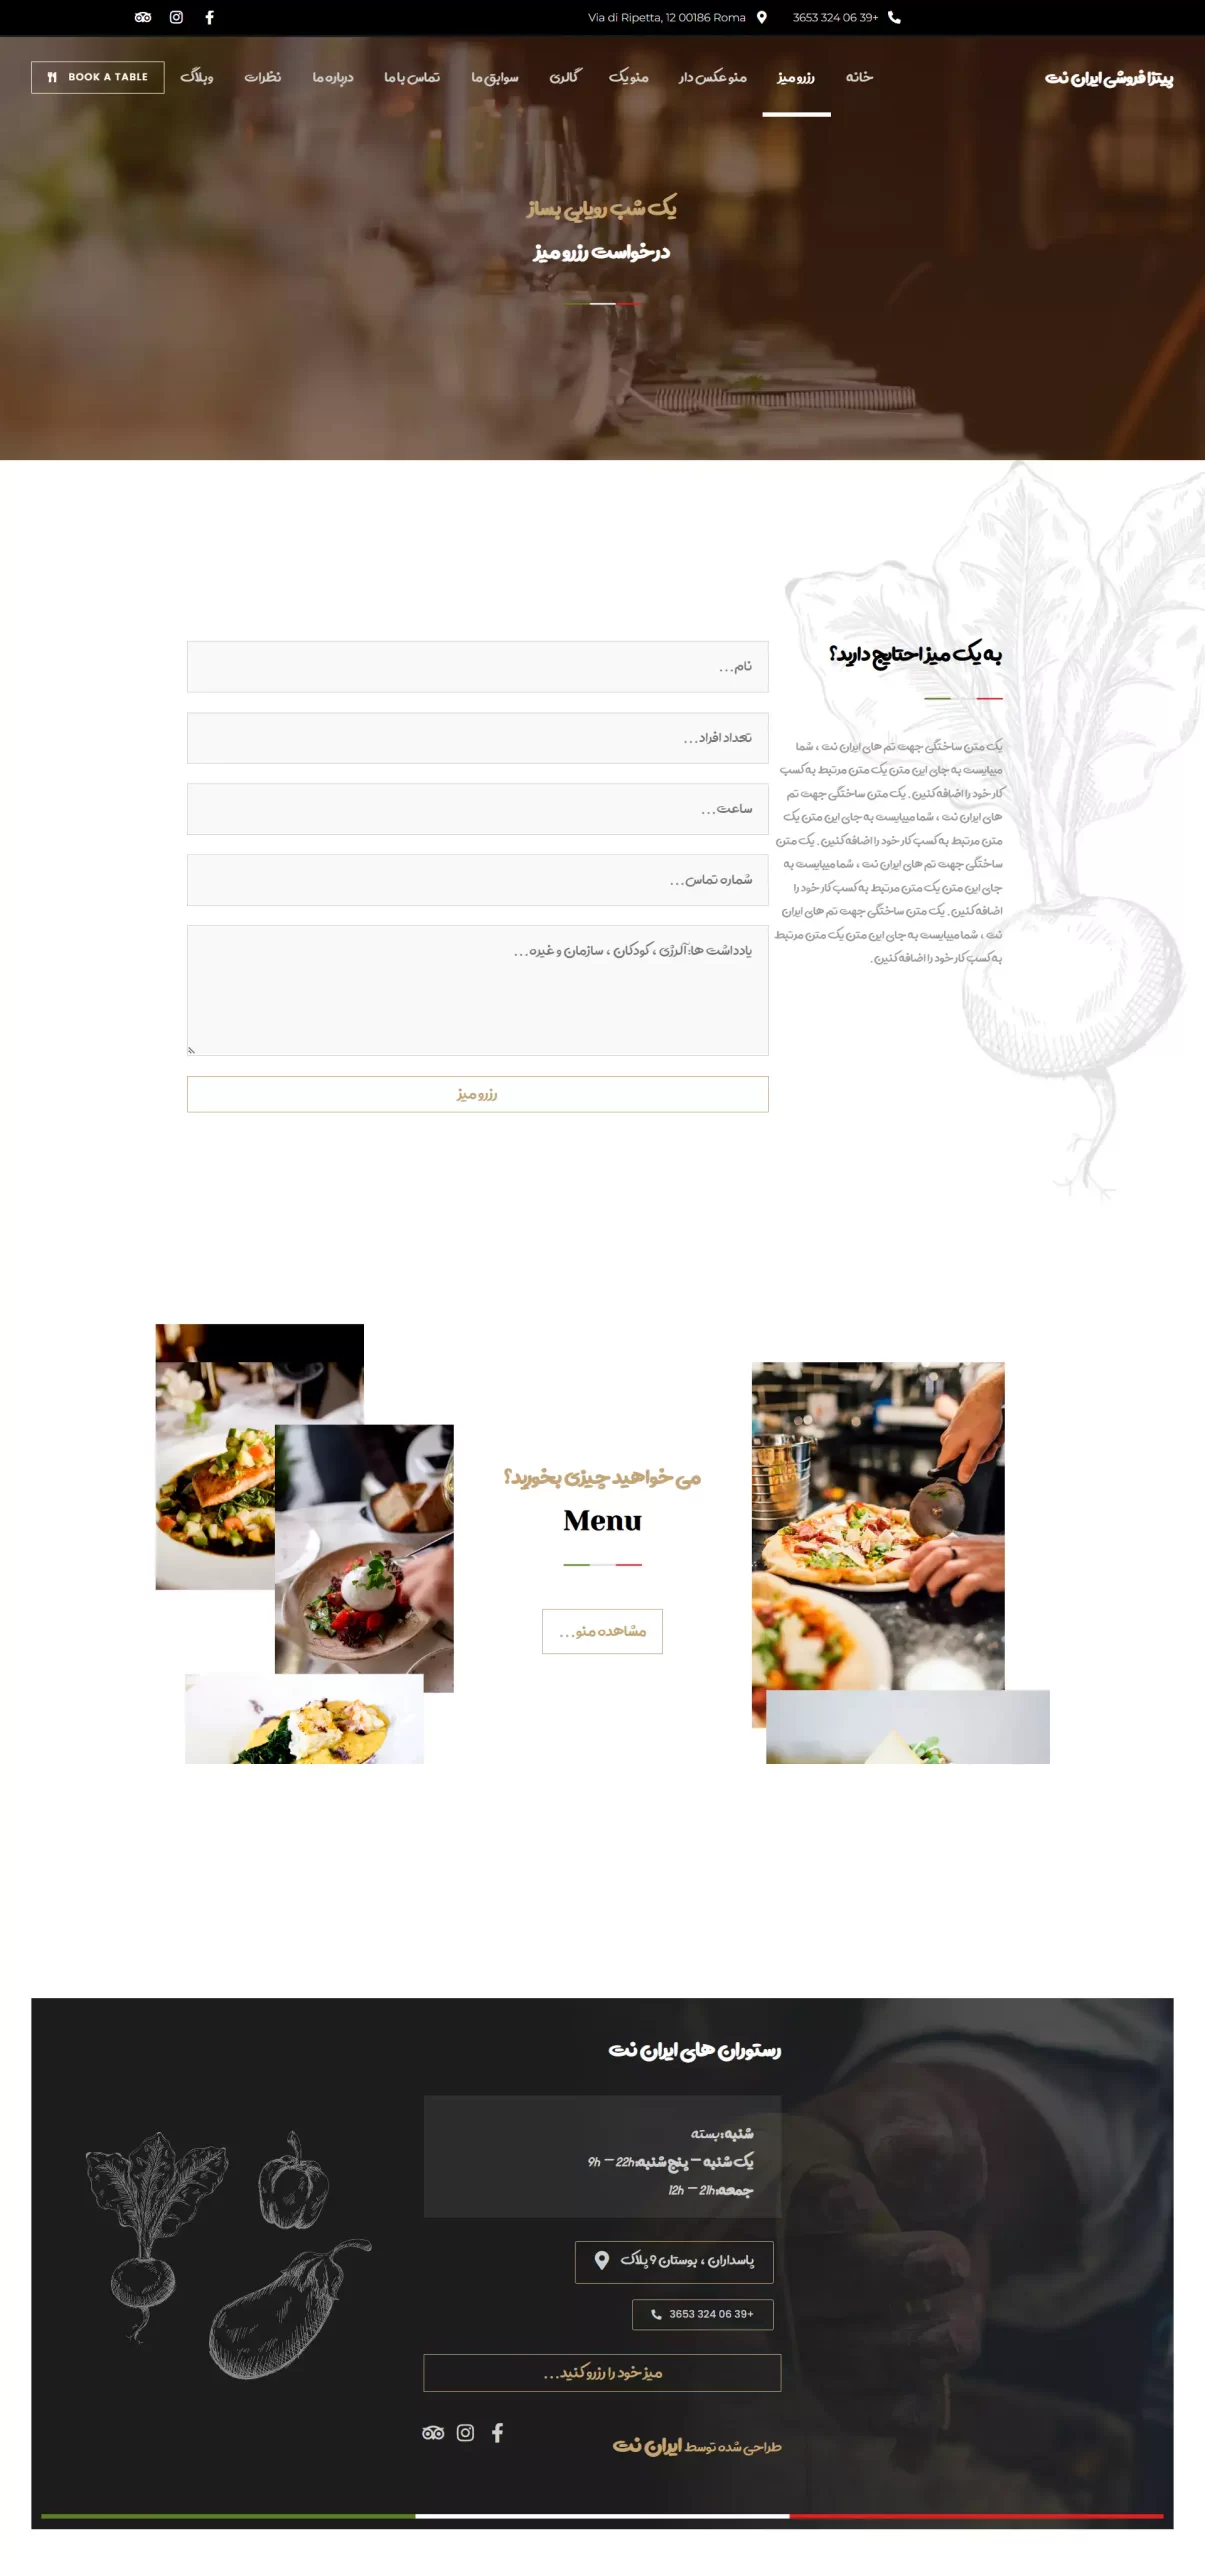 صفحه-رزرو-میز-قالب-آماده-سایت-رستورانی-تهیه-غذا-ایتالیایی-فست-فود